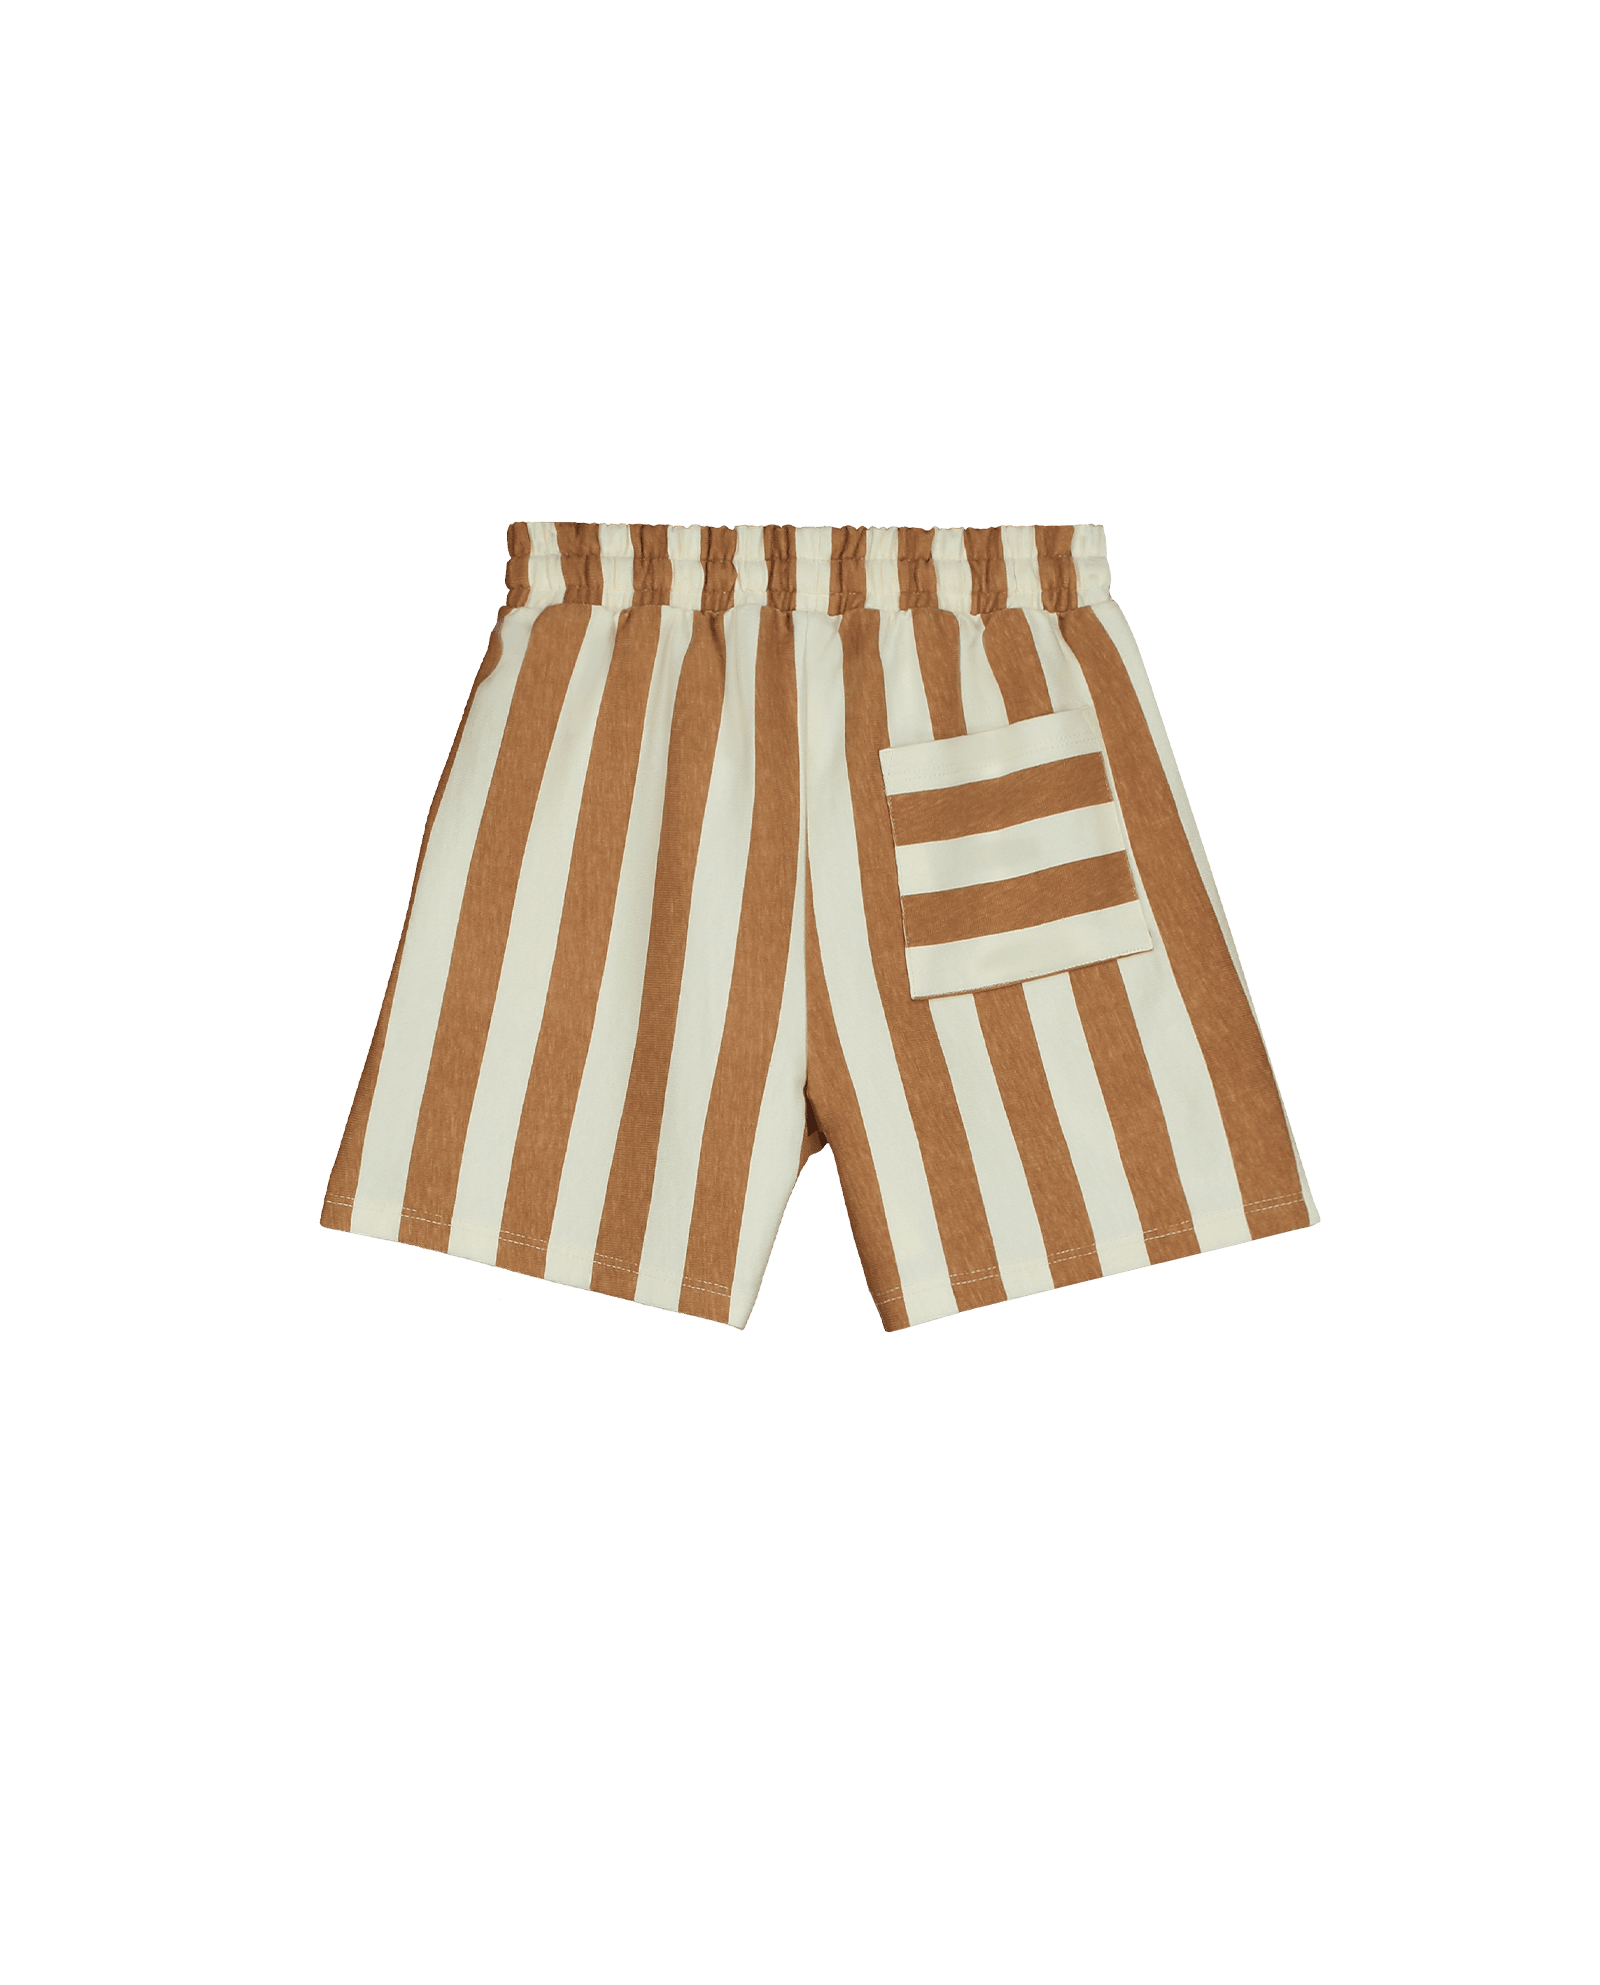 Oslo Shorts